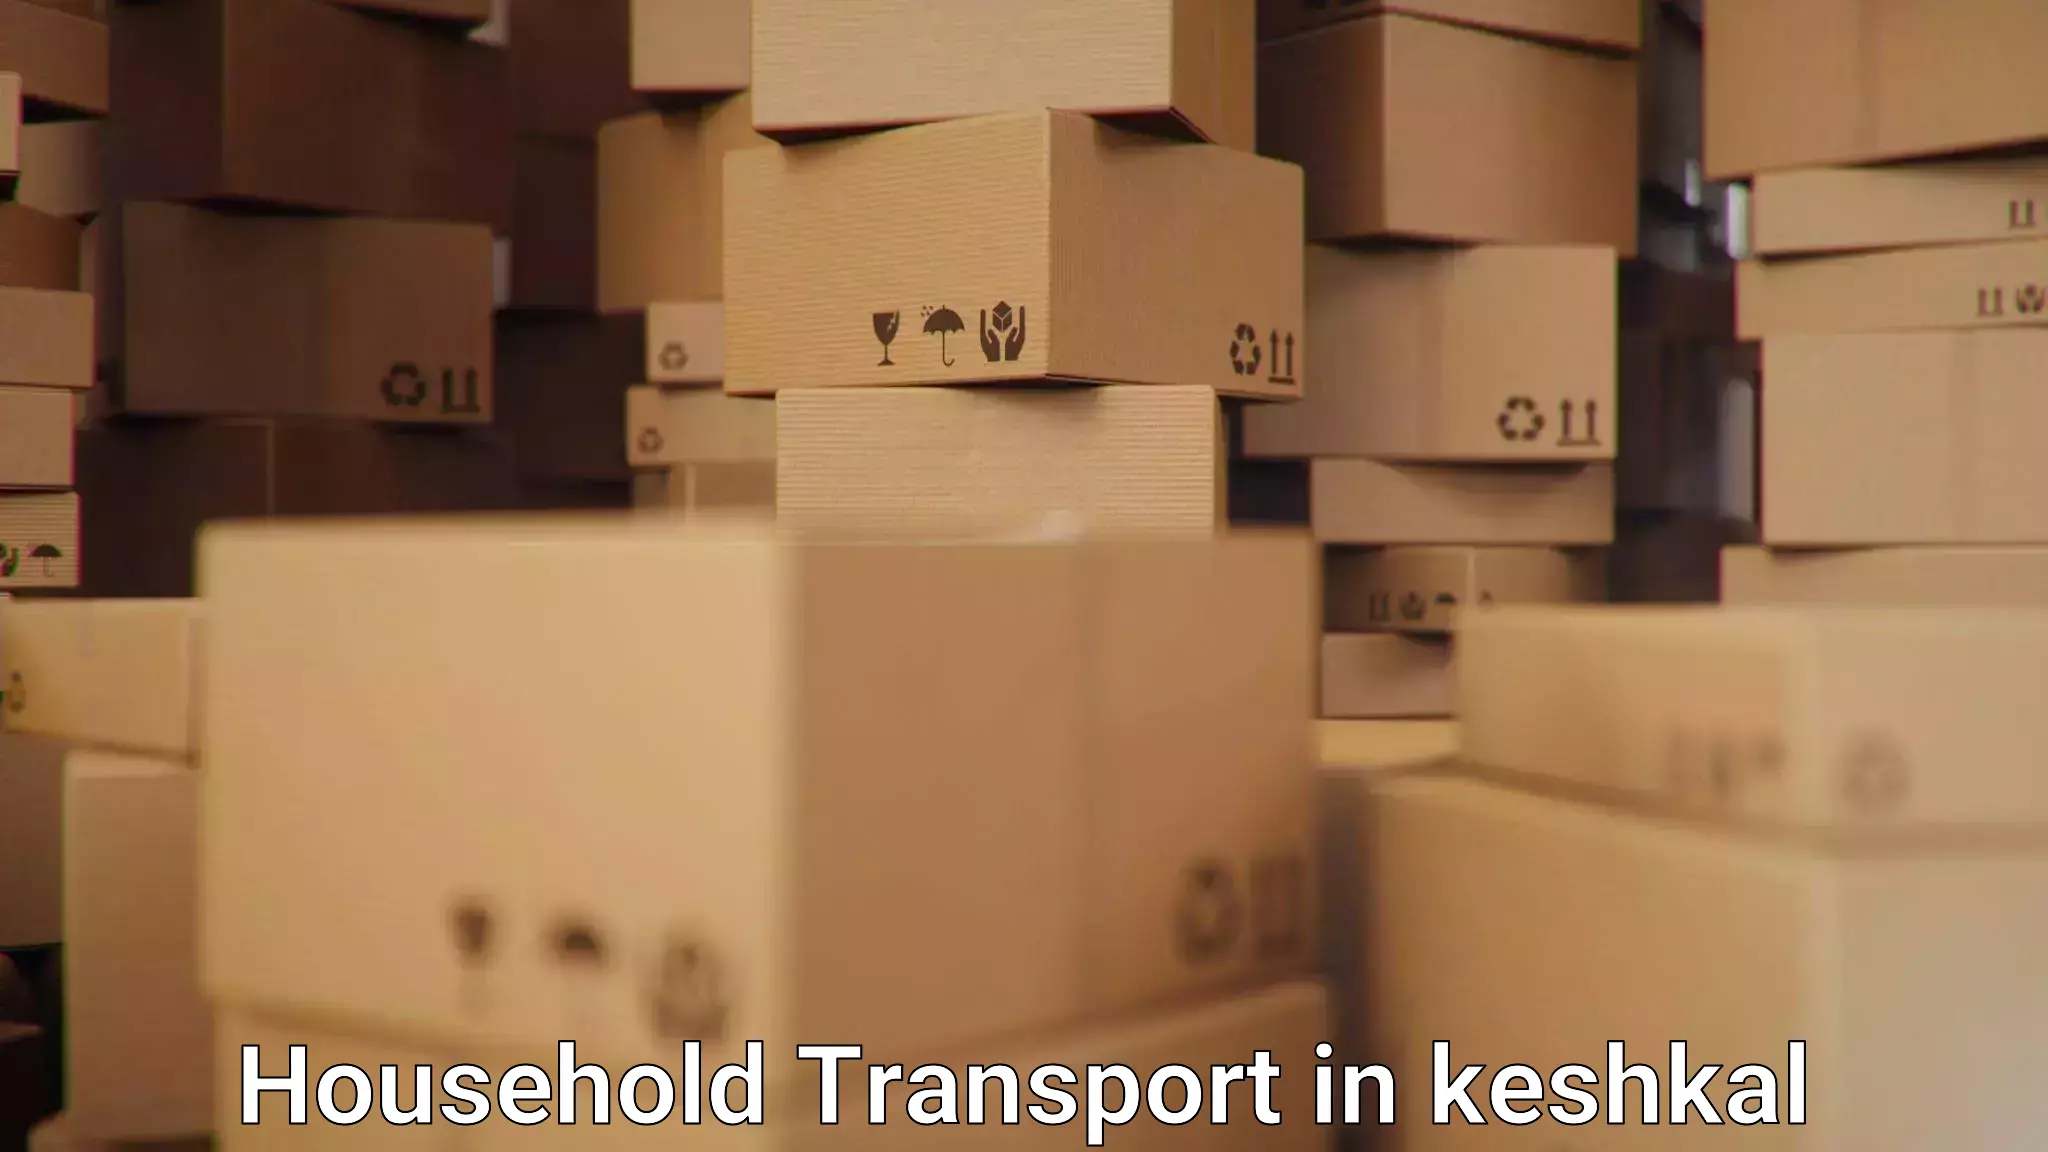 Household goods transporters in keshkal